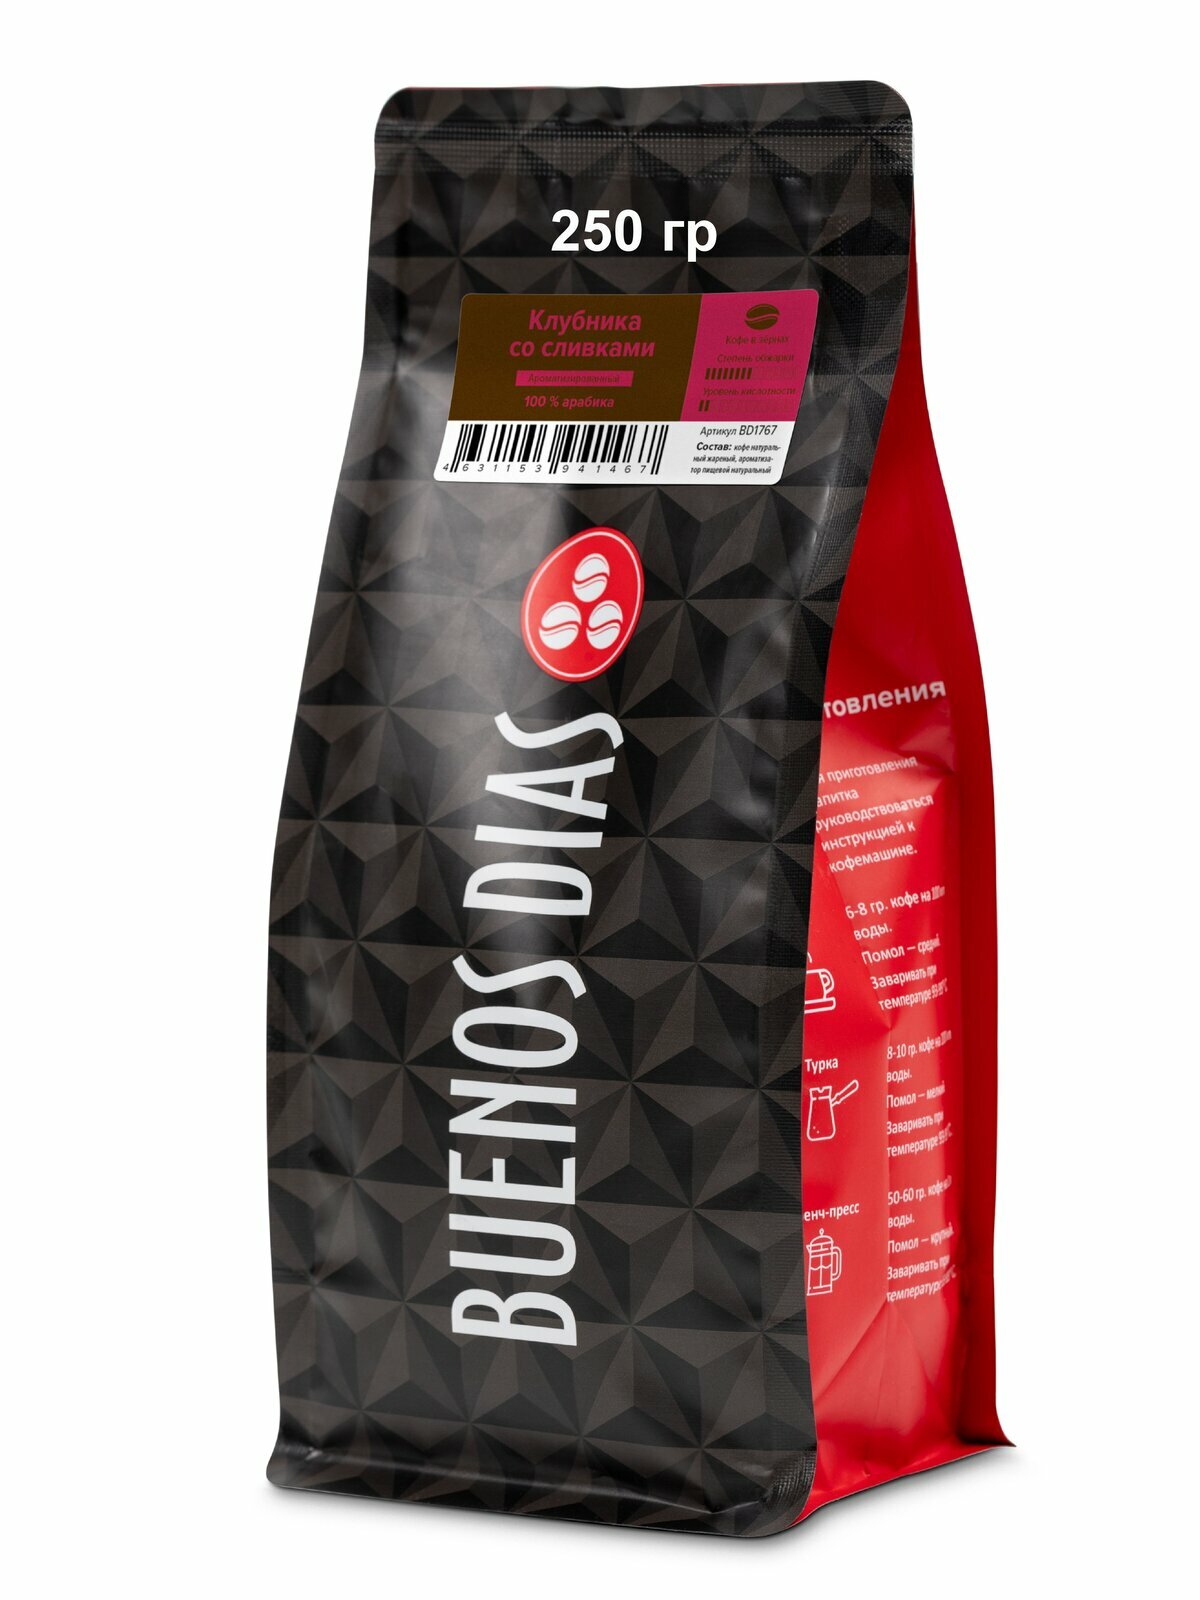 BUENOS DIAS / Кофе Клубника со сливками (100% Арабика) в зёрнах ароматизированный, уп. 250 гр